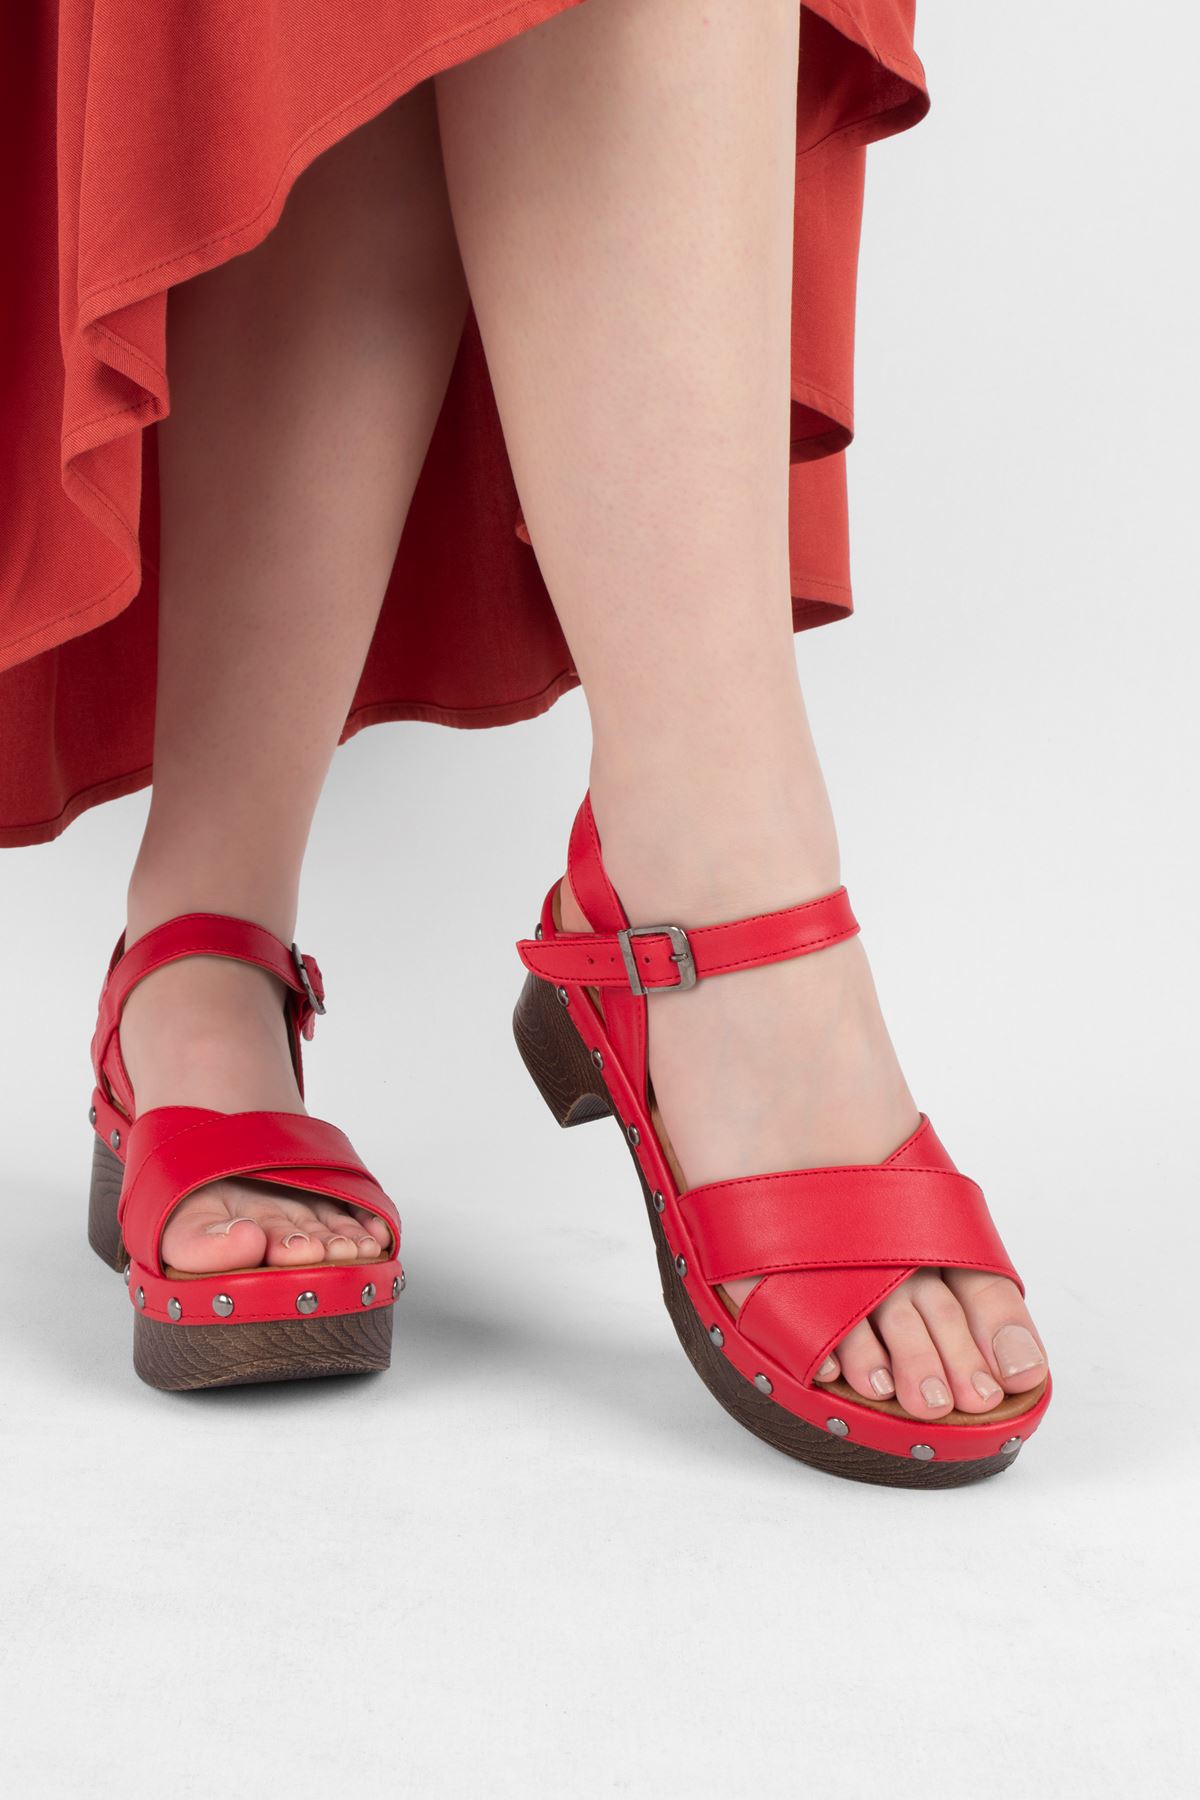 Amber Kadın Topuklu Ayakkabı Takunya-Kırmızı